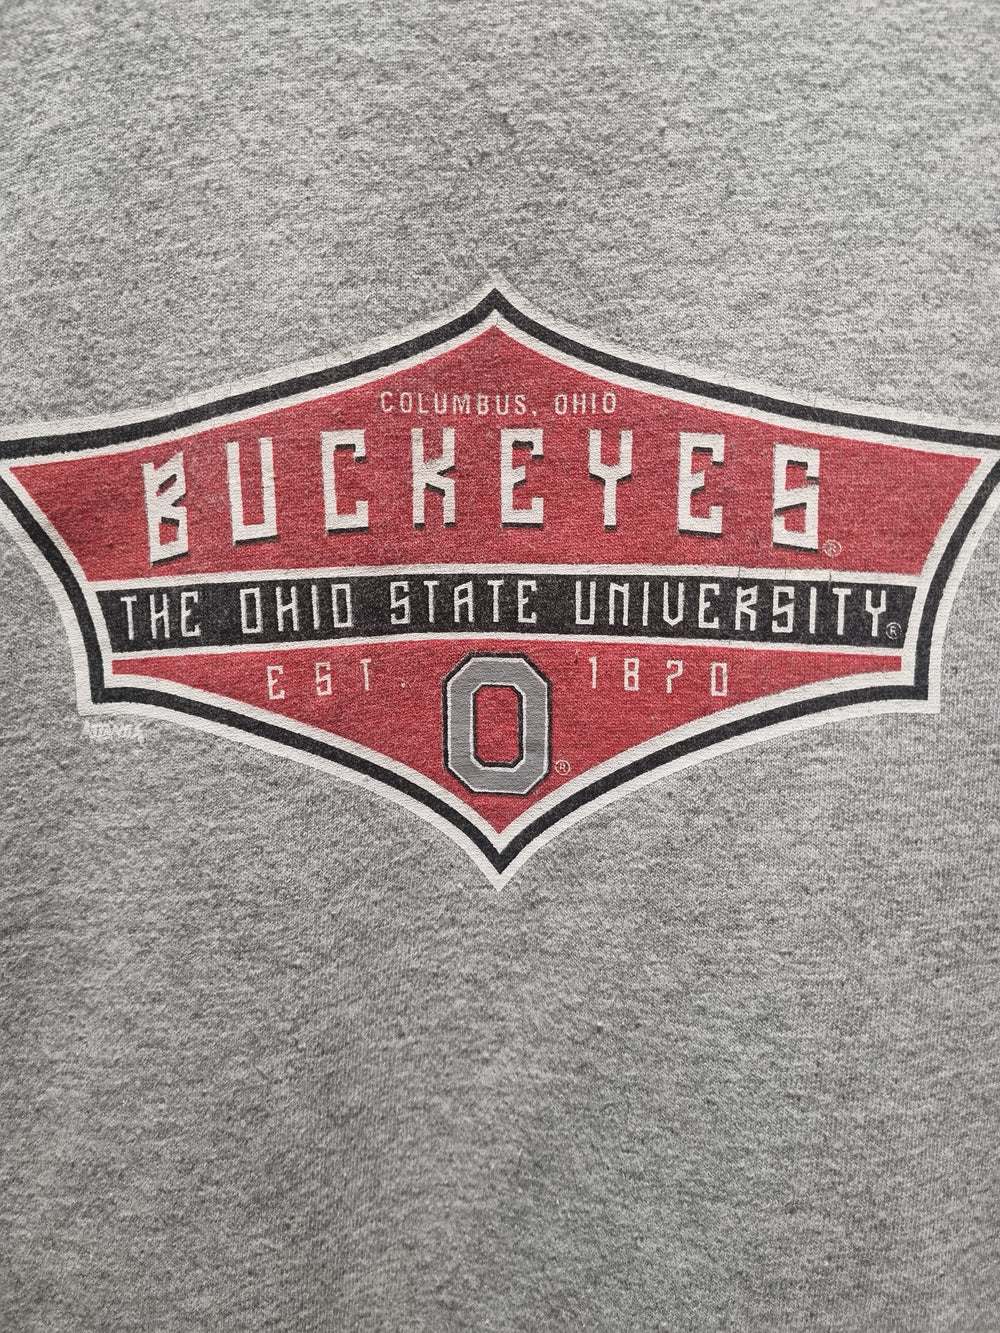 Ohio State Buckeyes 1870 Sweatshirt Large